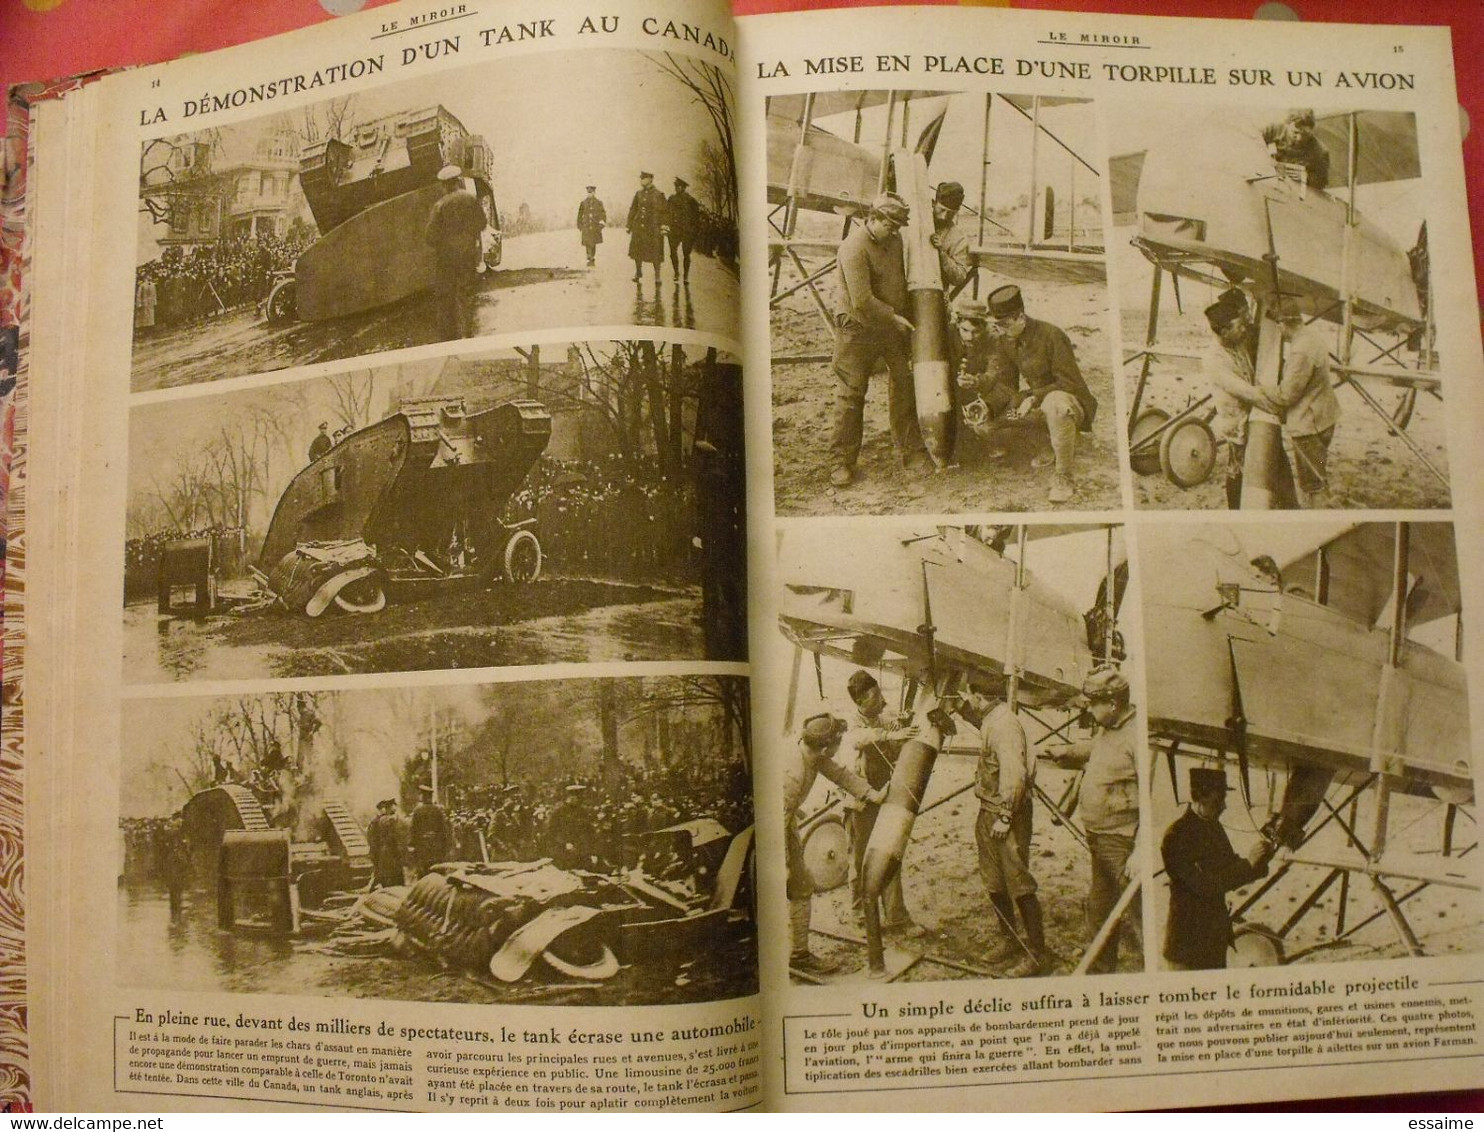 Le miroir recueil reliure 1918 (52 n°). 14-18 très illustrée, documentée. armistice russie bolcheviks